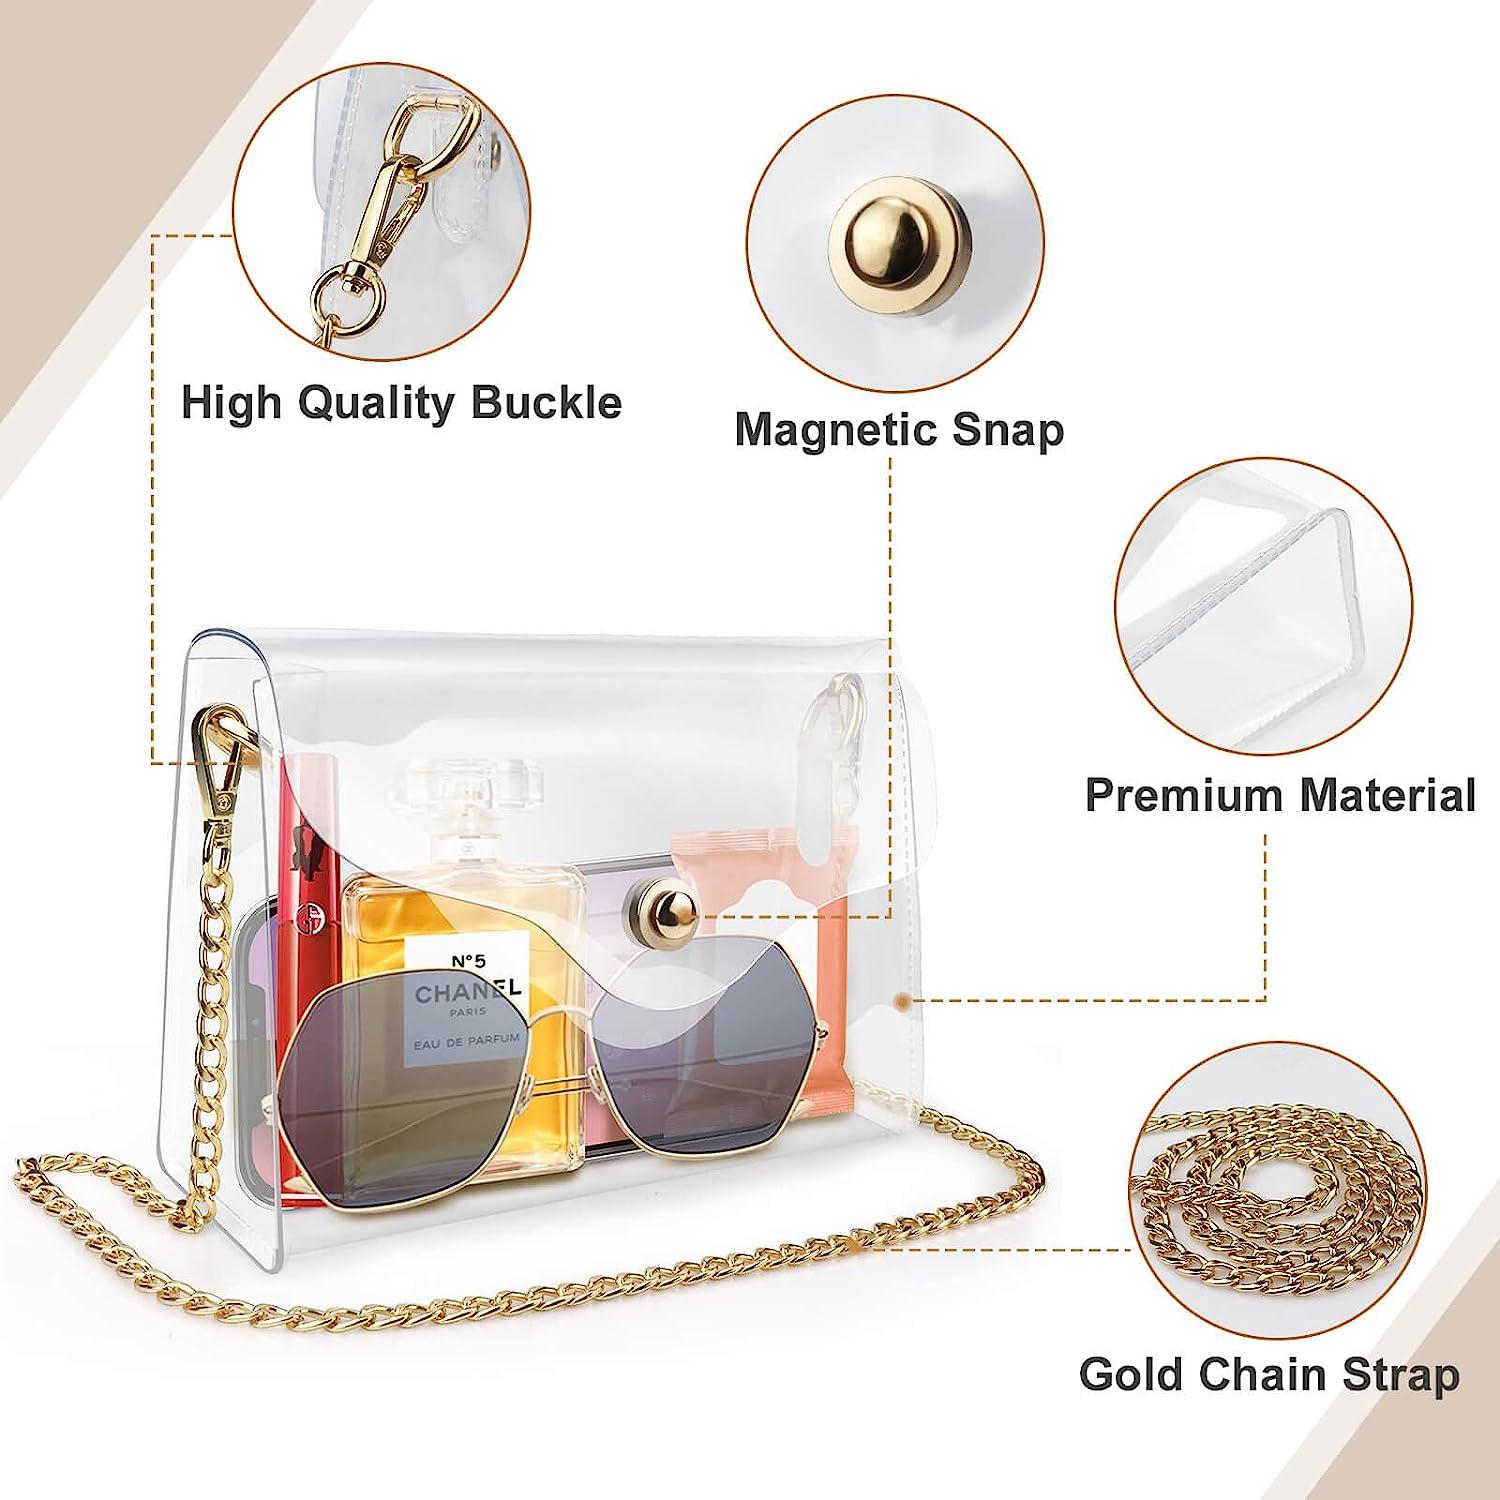 The Transparent Clutch Purse | Acrylic Bag See Through | Box Paris Clutch  Bag Gold Chain